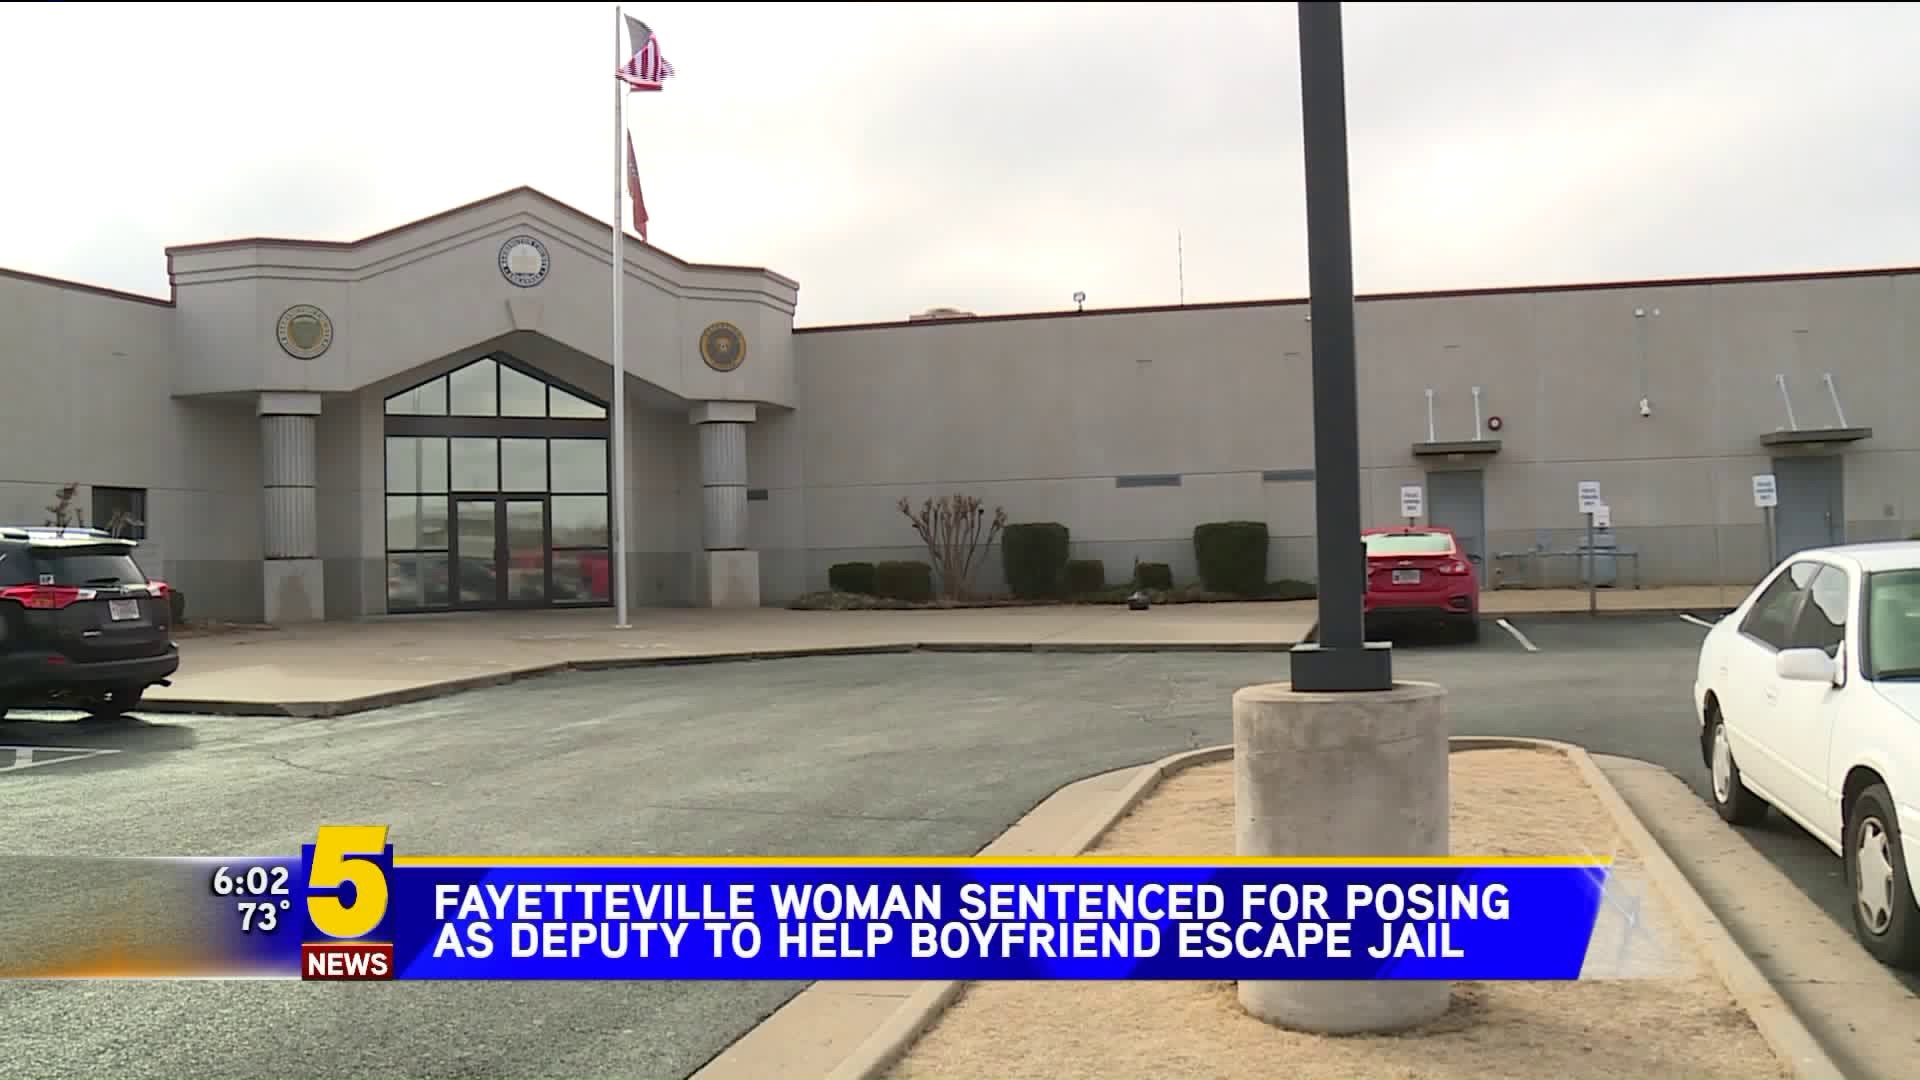 Fayetteville Woman Sentenced for Posing As Deputy to Help Boyfriend Escape